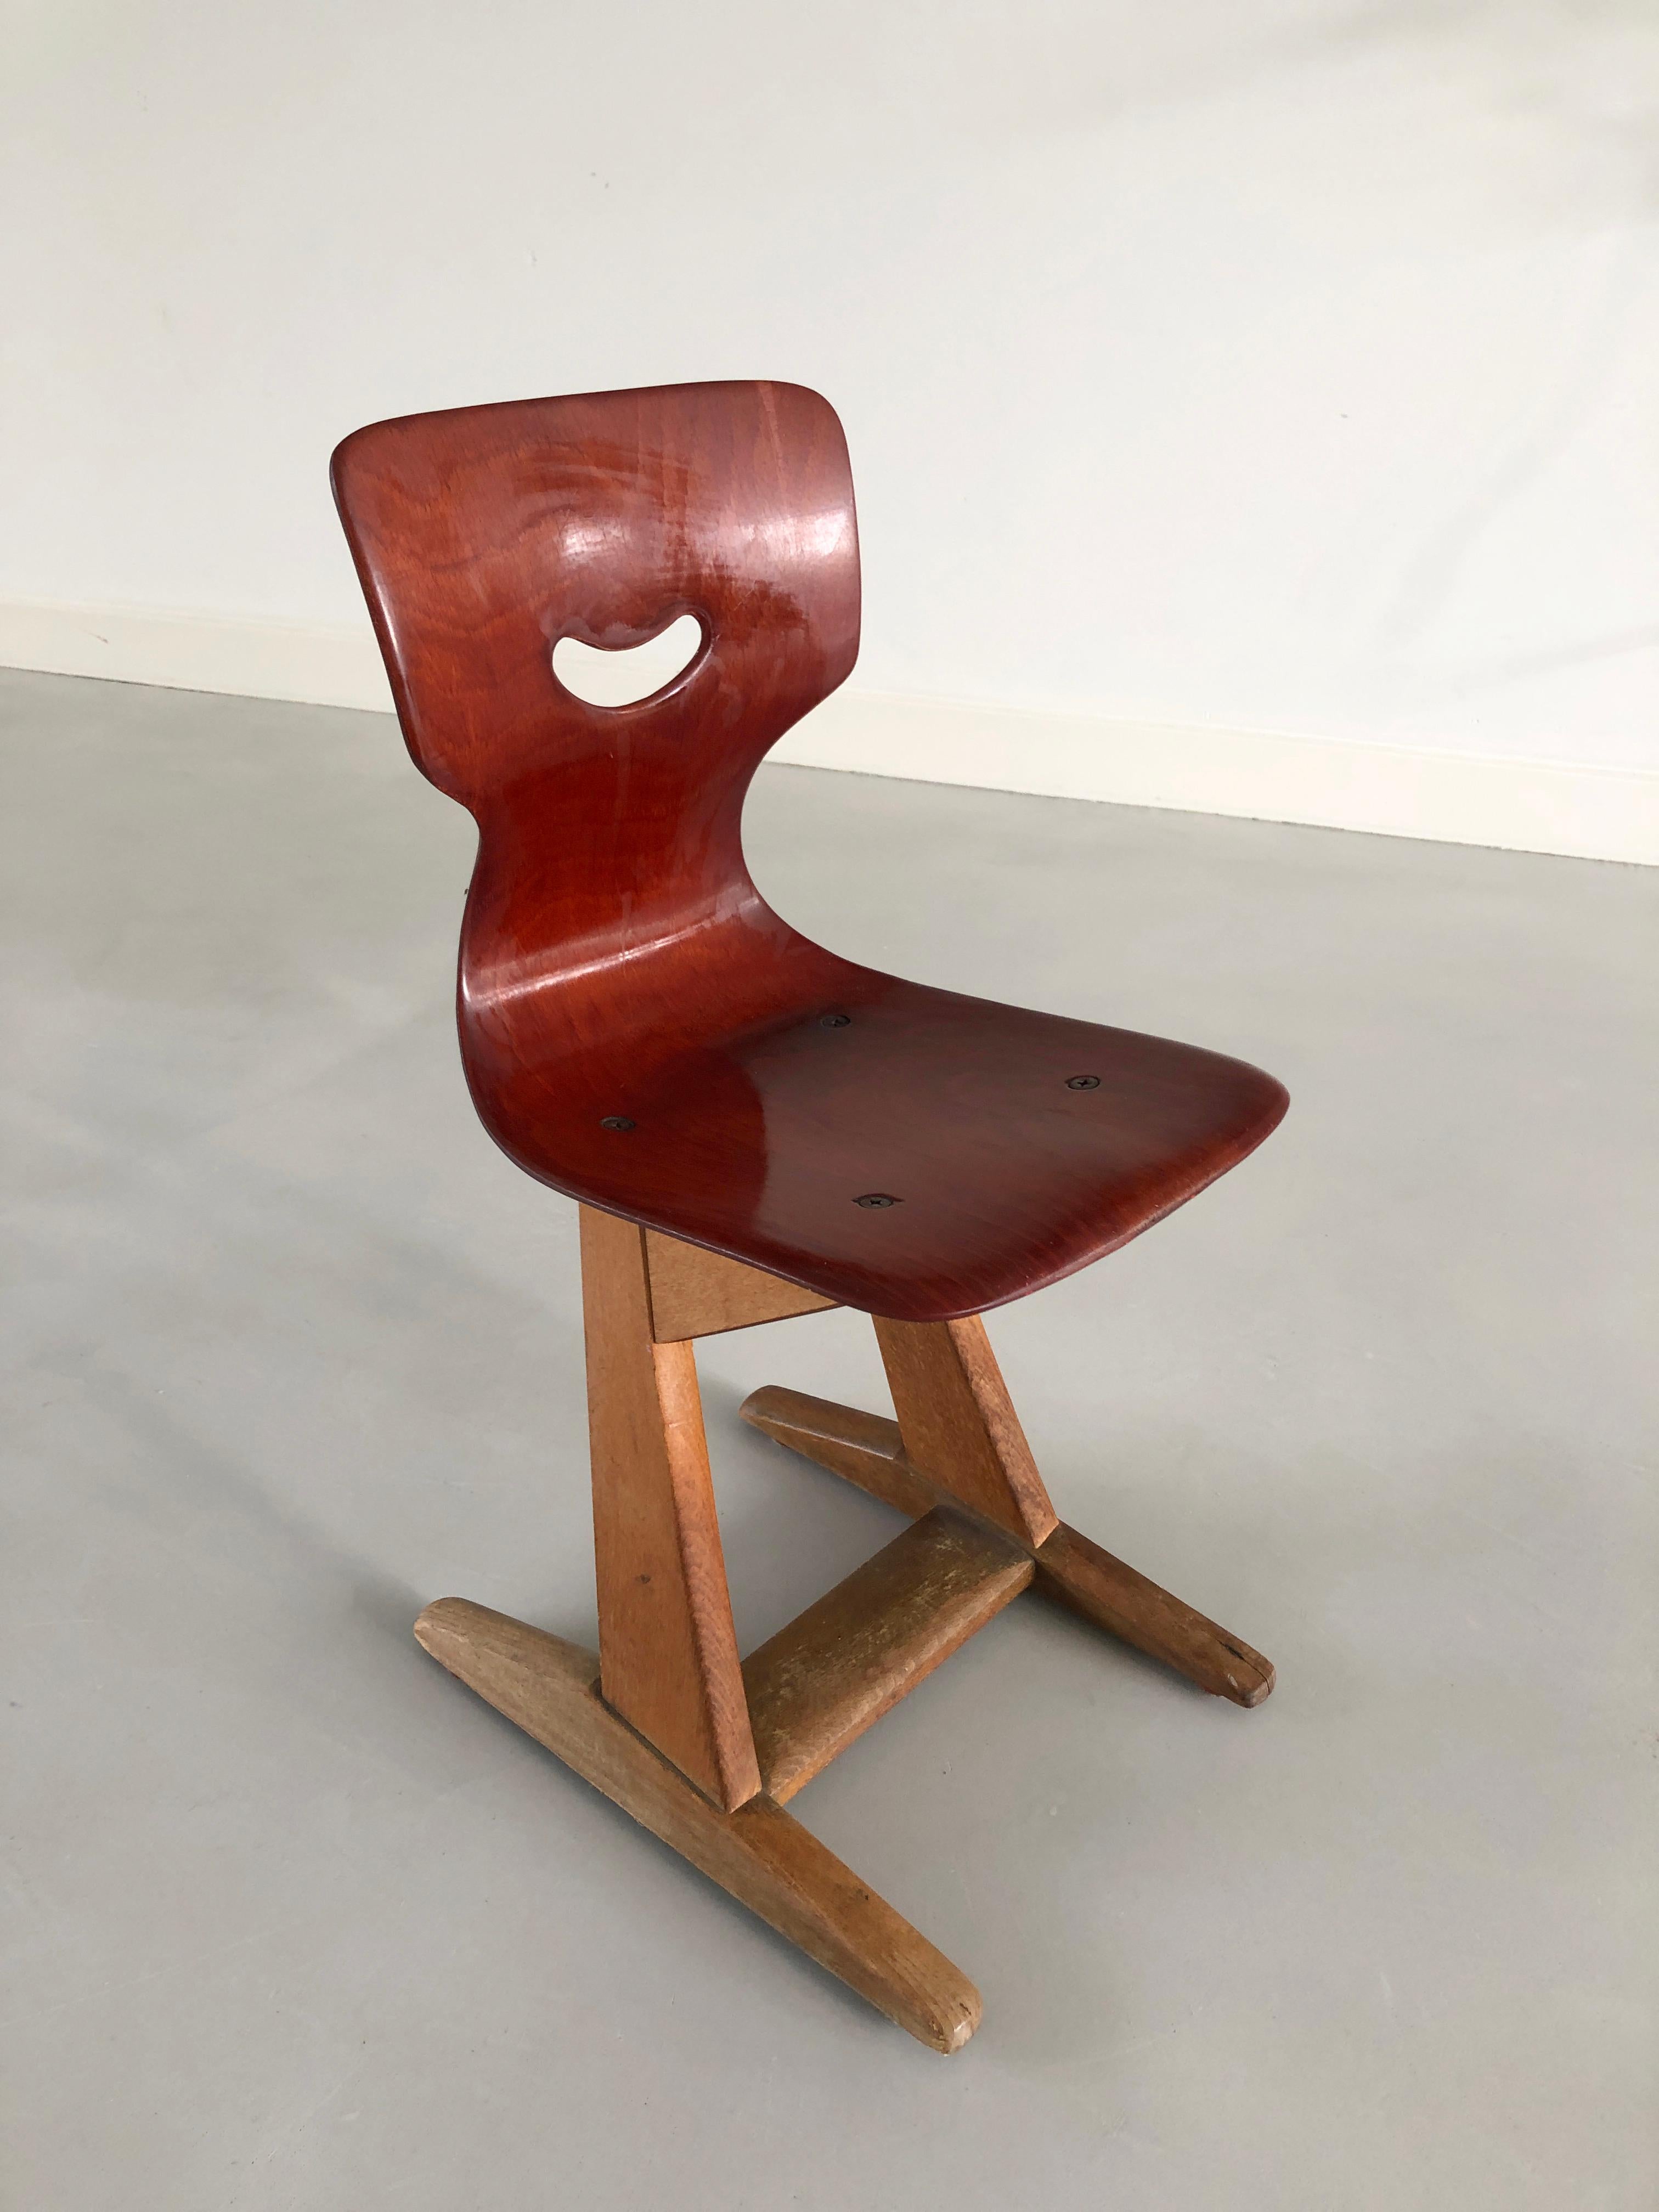 La chaise à sourire ! - Président de l'école Pagholz / Pagwood
Concepteur : Adams 1950 pour Pagholz Flötotto.
La forme du siège de 1952 est brevetée dans le monde entier. C'est le produit FLÖTOTTO le plus connu. La coque du siège en bois répond à